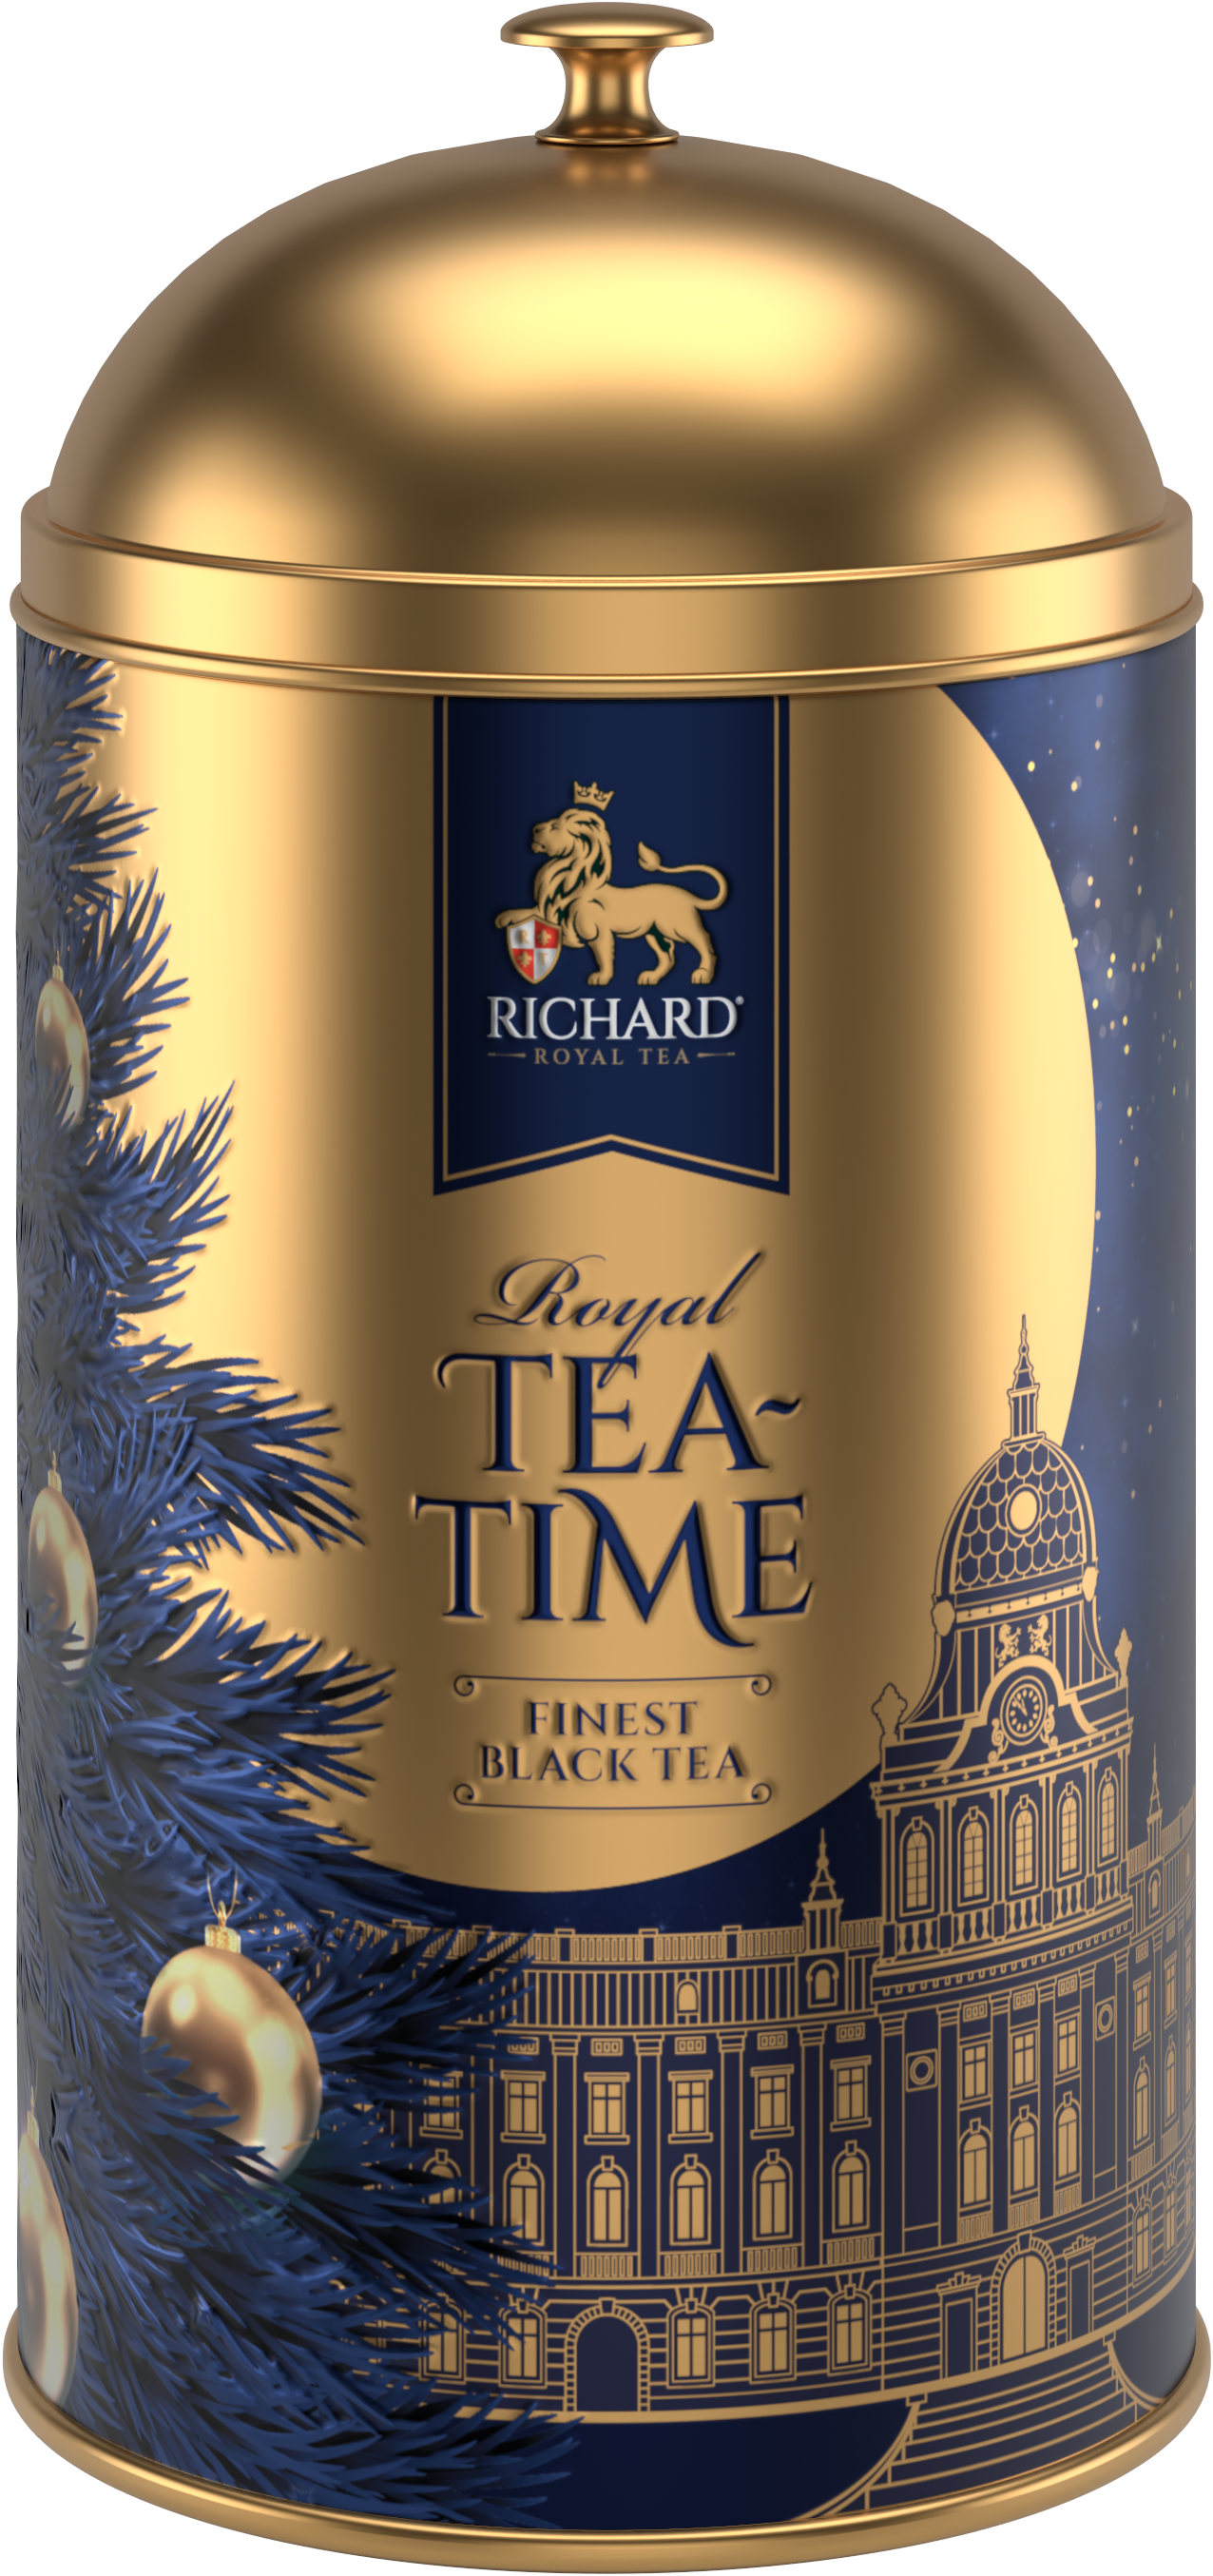 Richard "Királyi Teaidő", szálas fekete tea, fémdobozos 60g